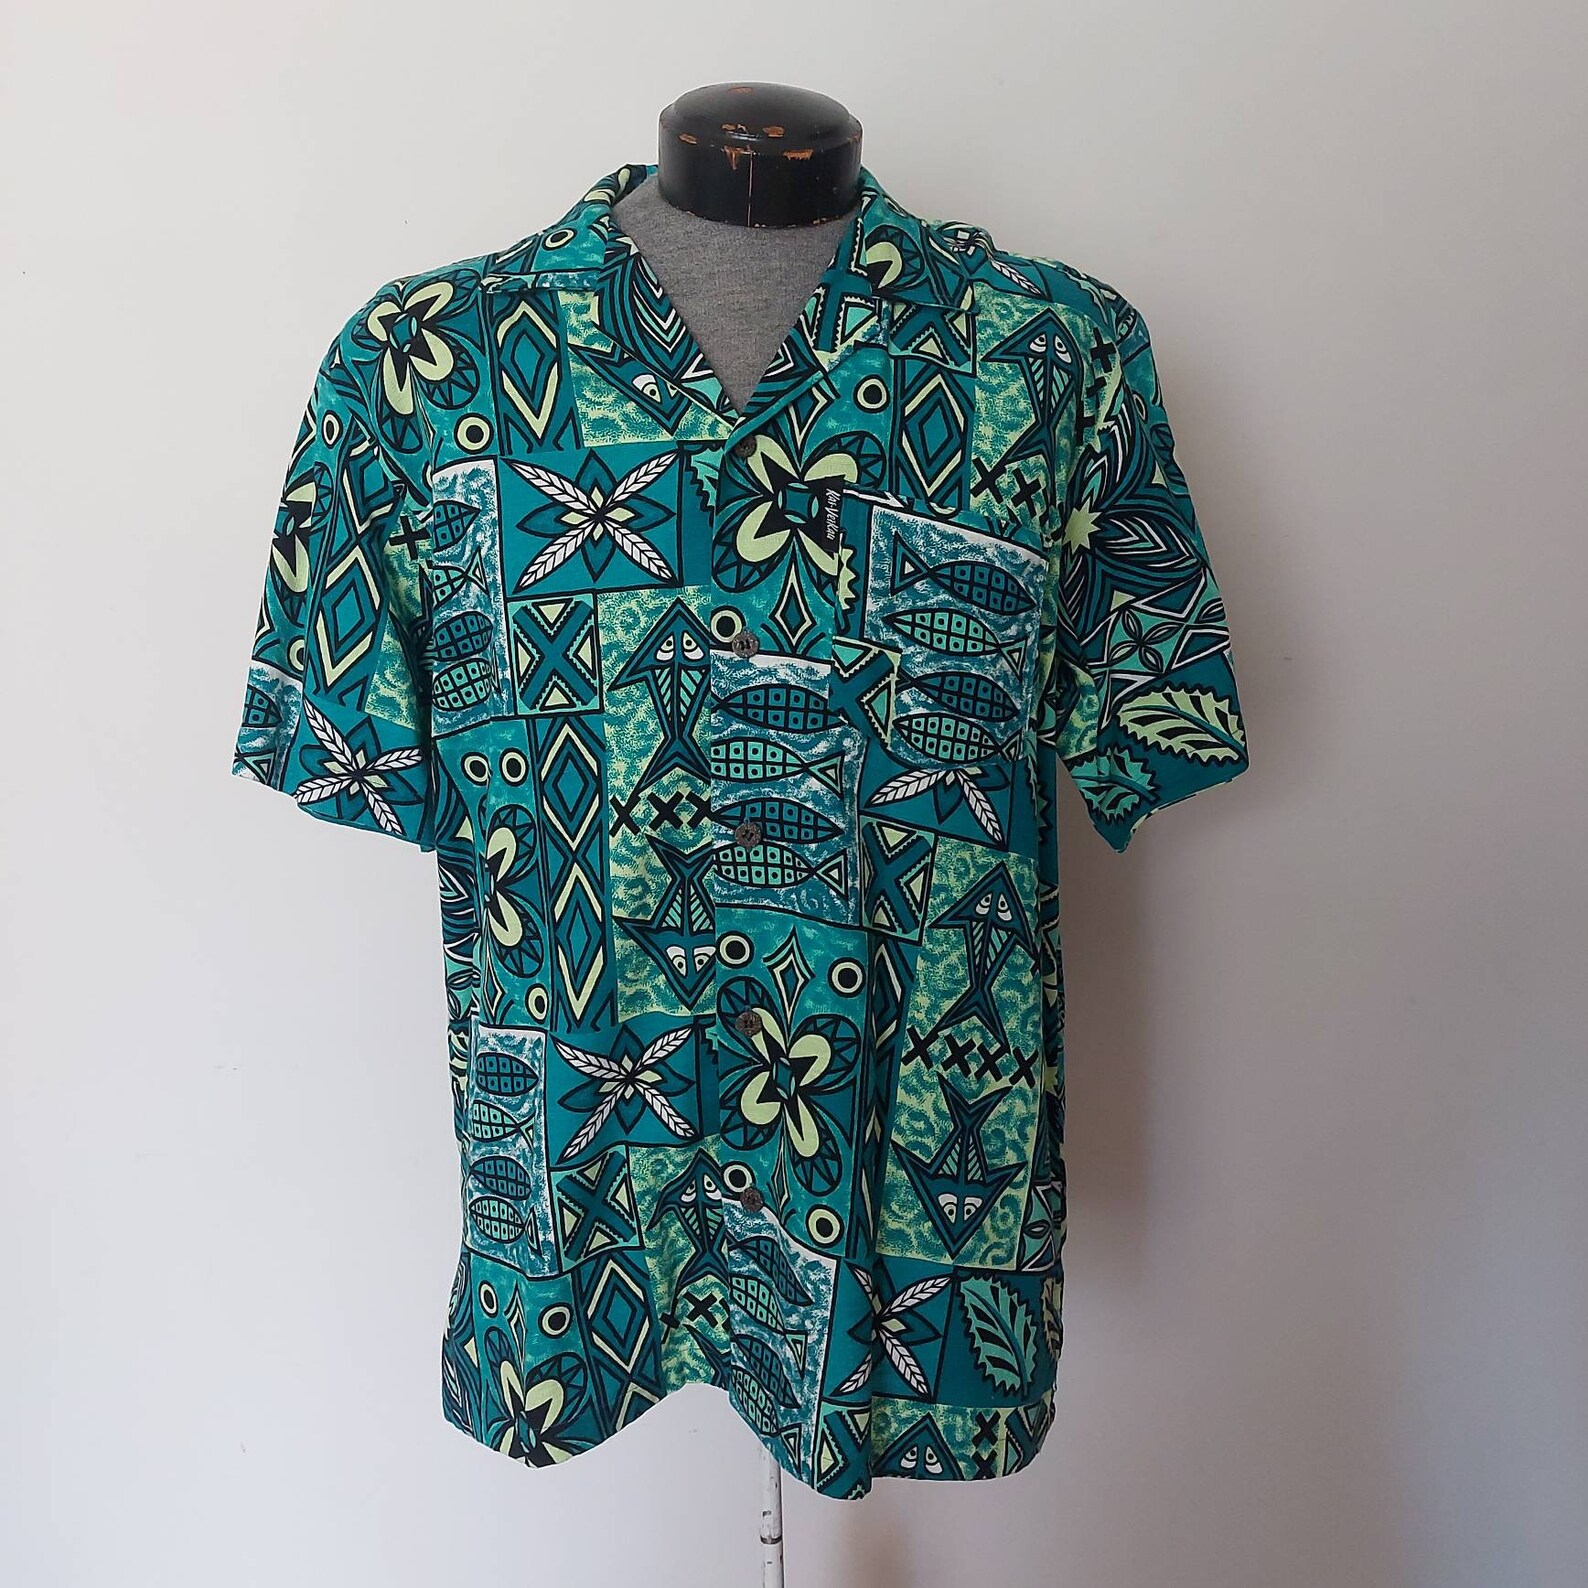 1990s Men's Fijian shirt vintage Kai VeiKau Fiji | Etsy